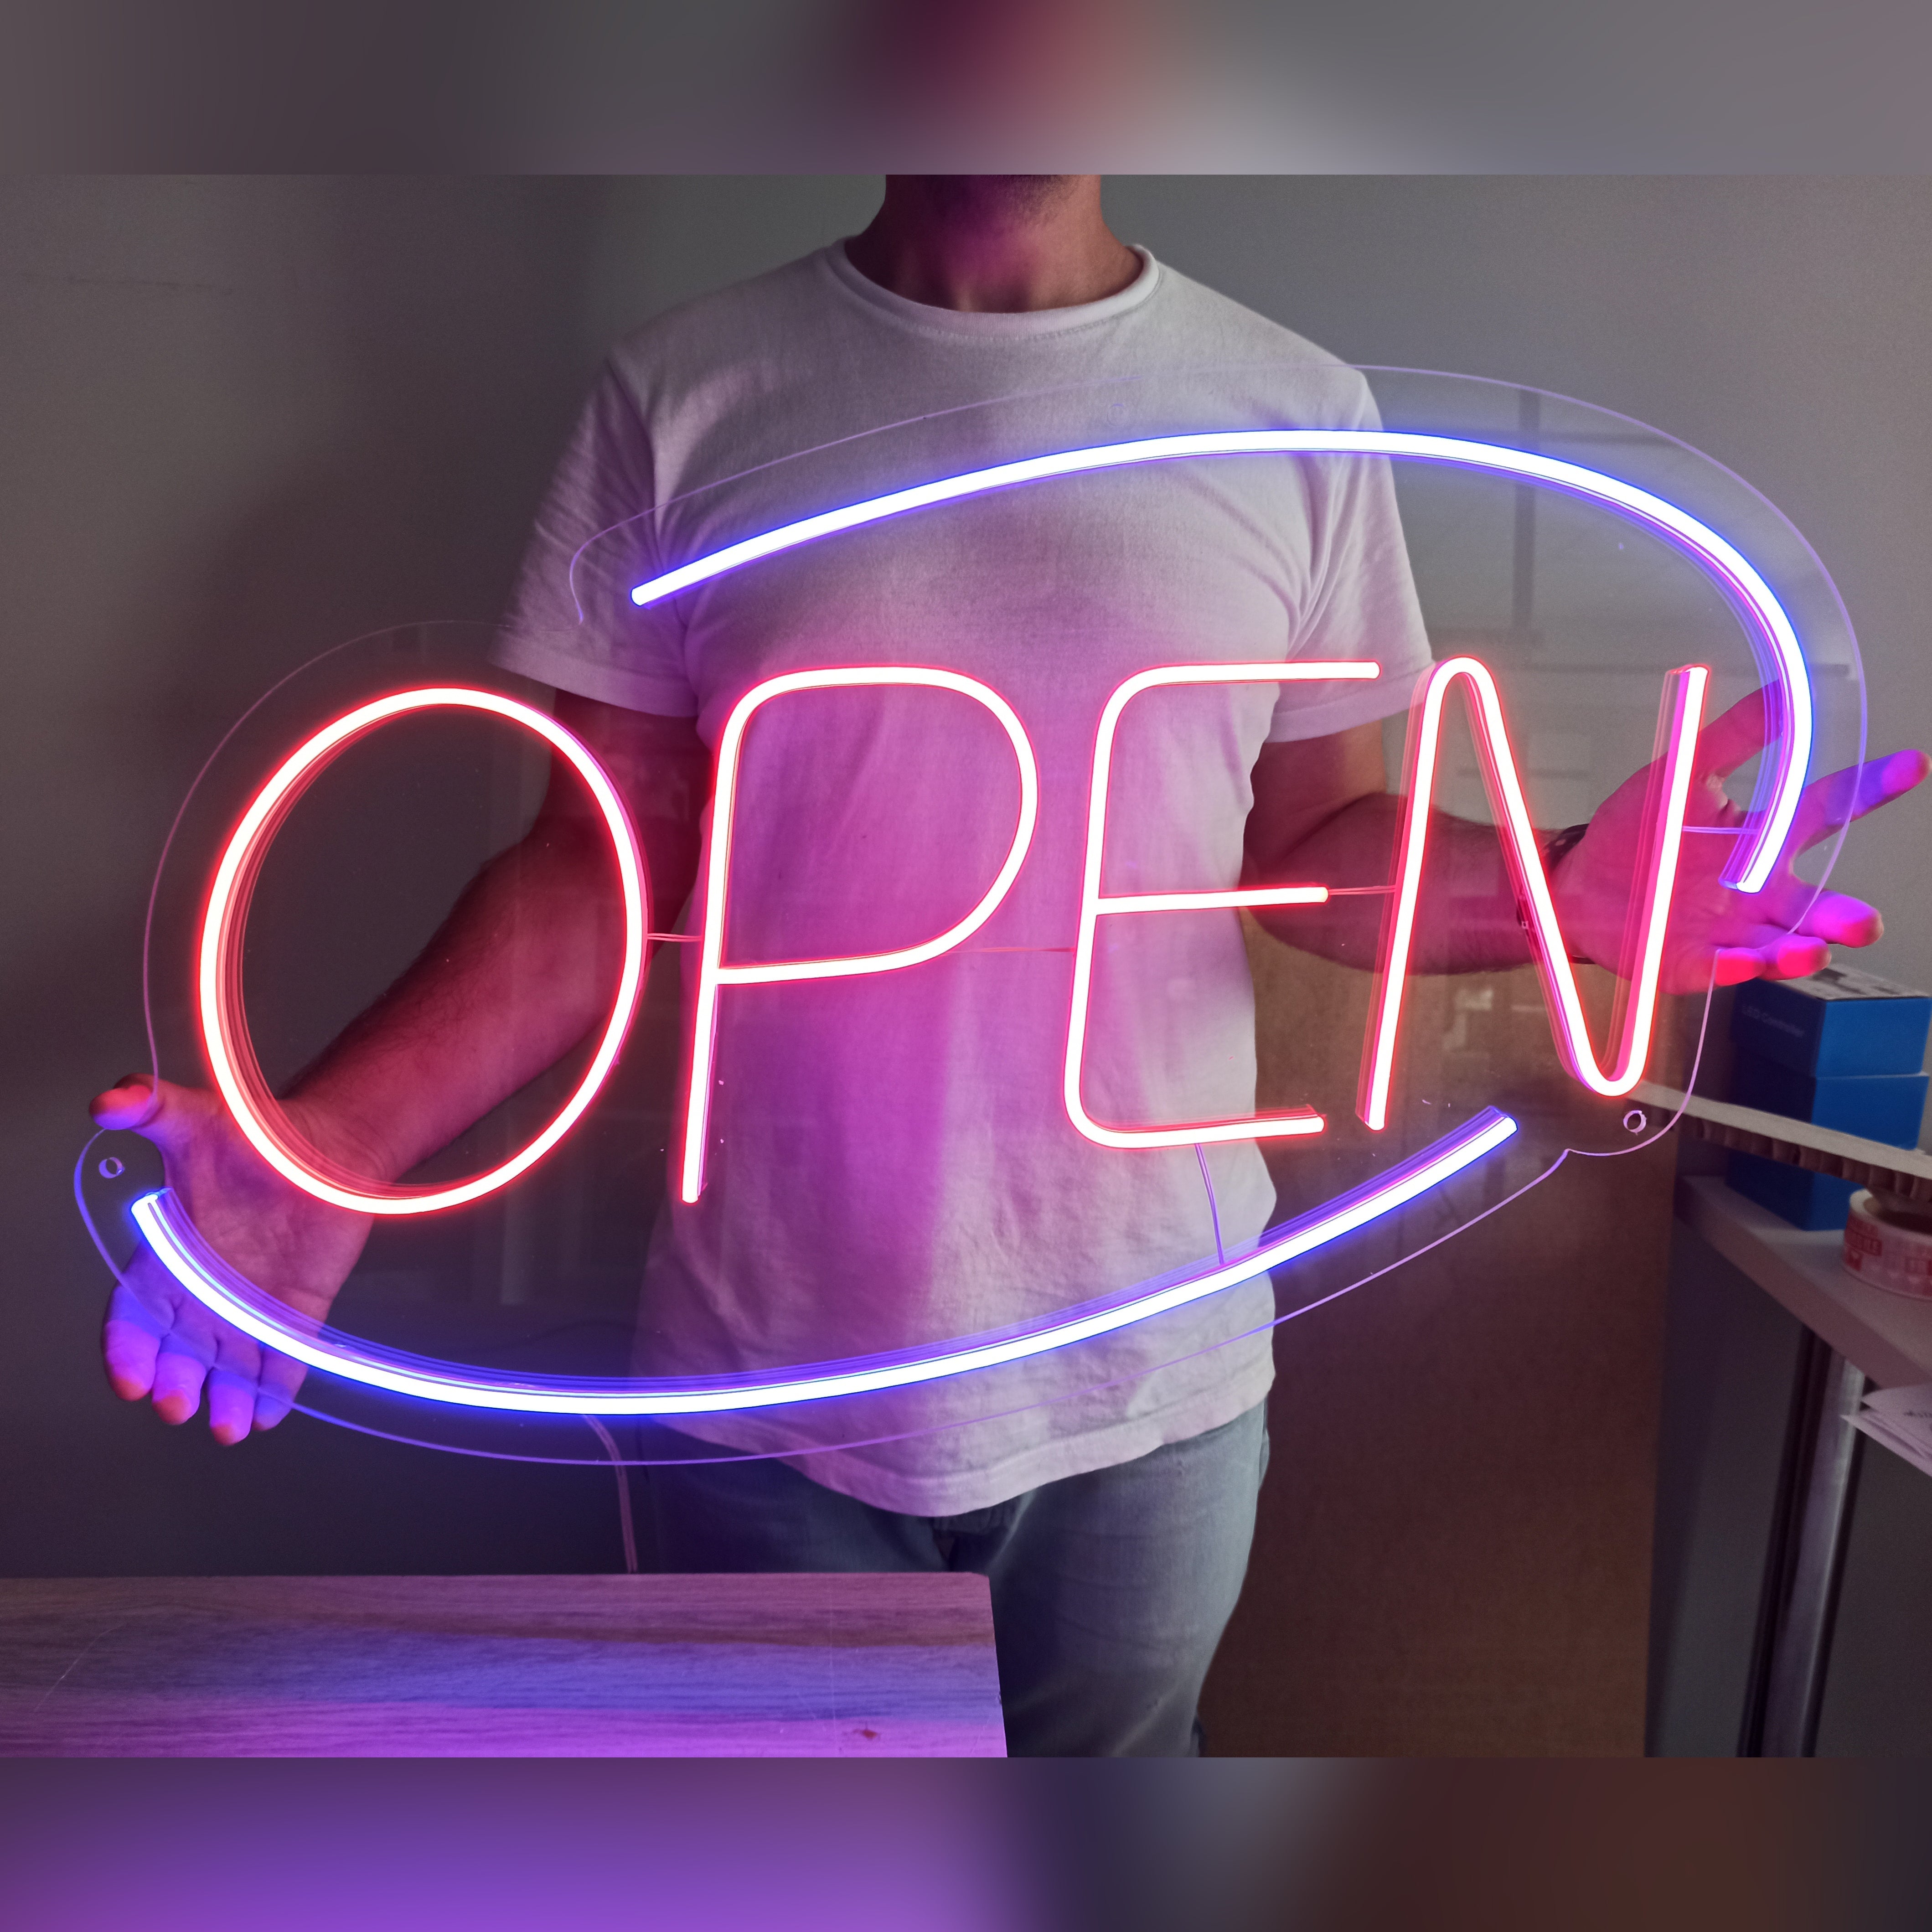 Neon Sign "Open"